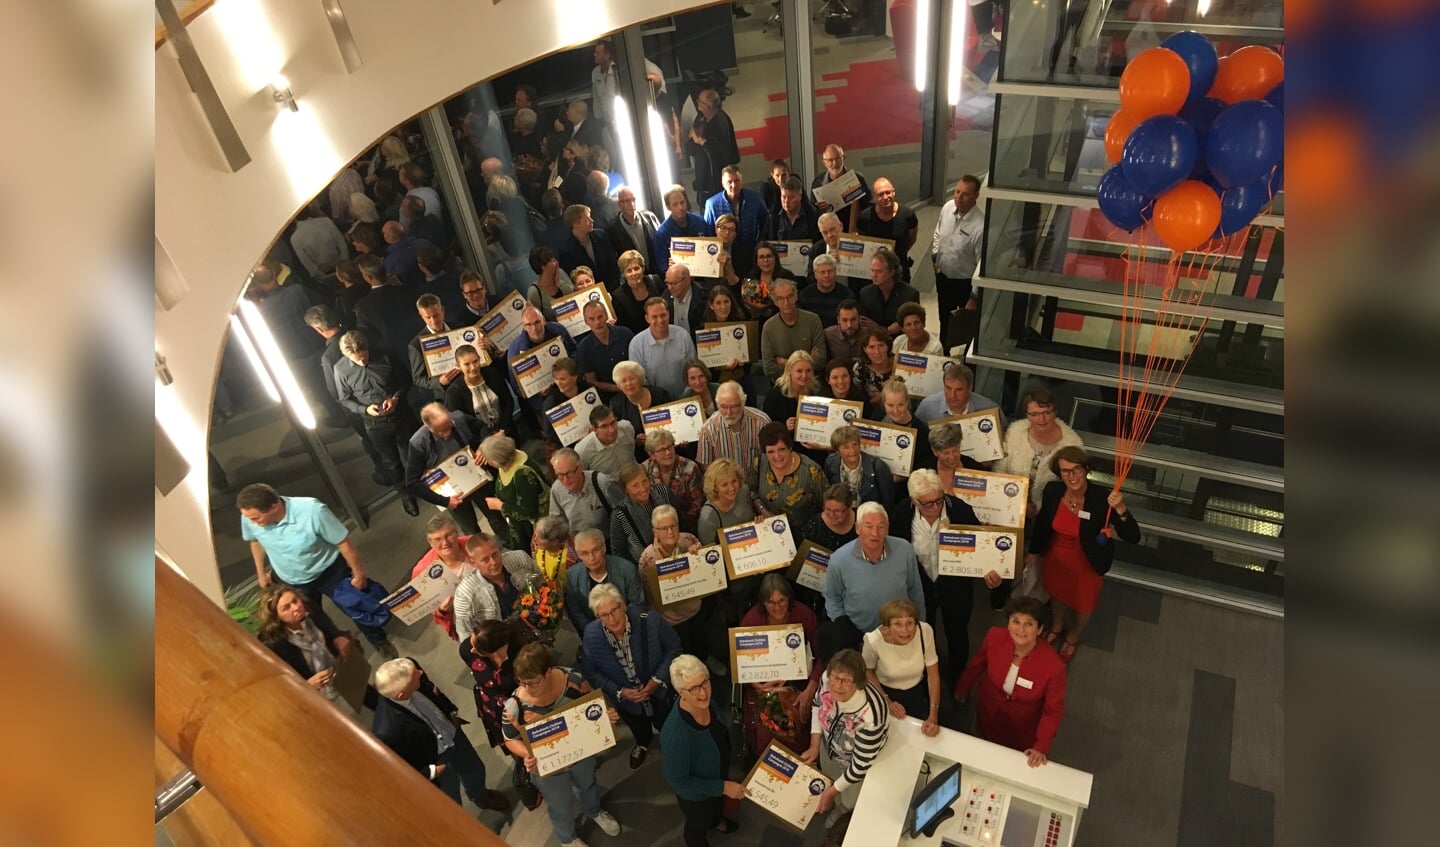 De grootste winnaars van de avond werden stichting CarMar (midden), RKAV Volendam (links) en museum De Speeltoren. (Foto: Evert Ruis)